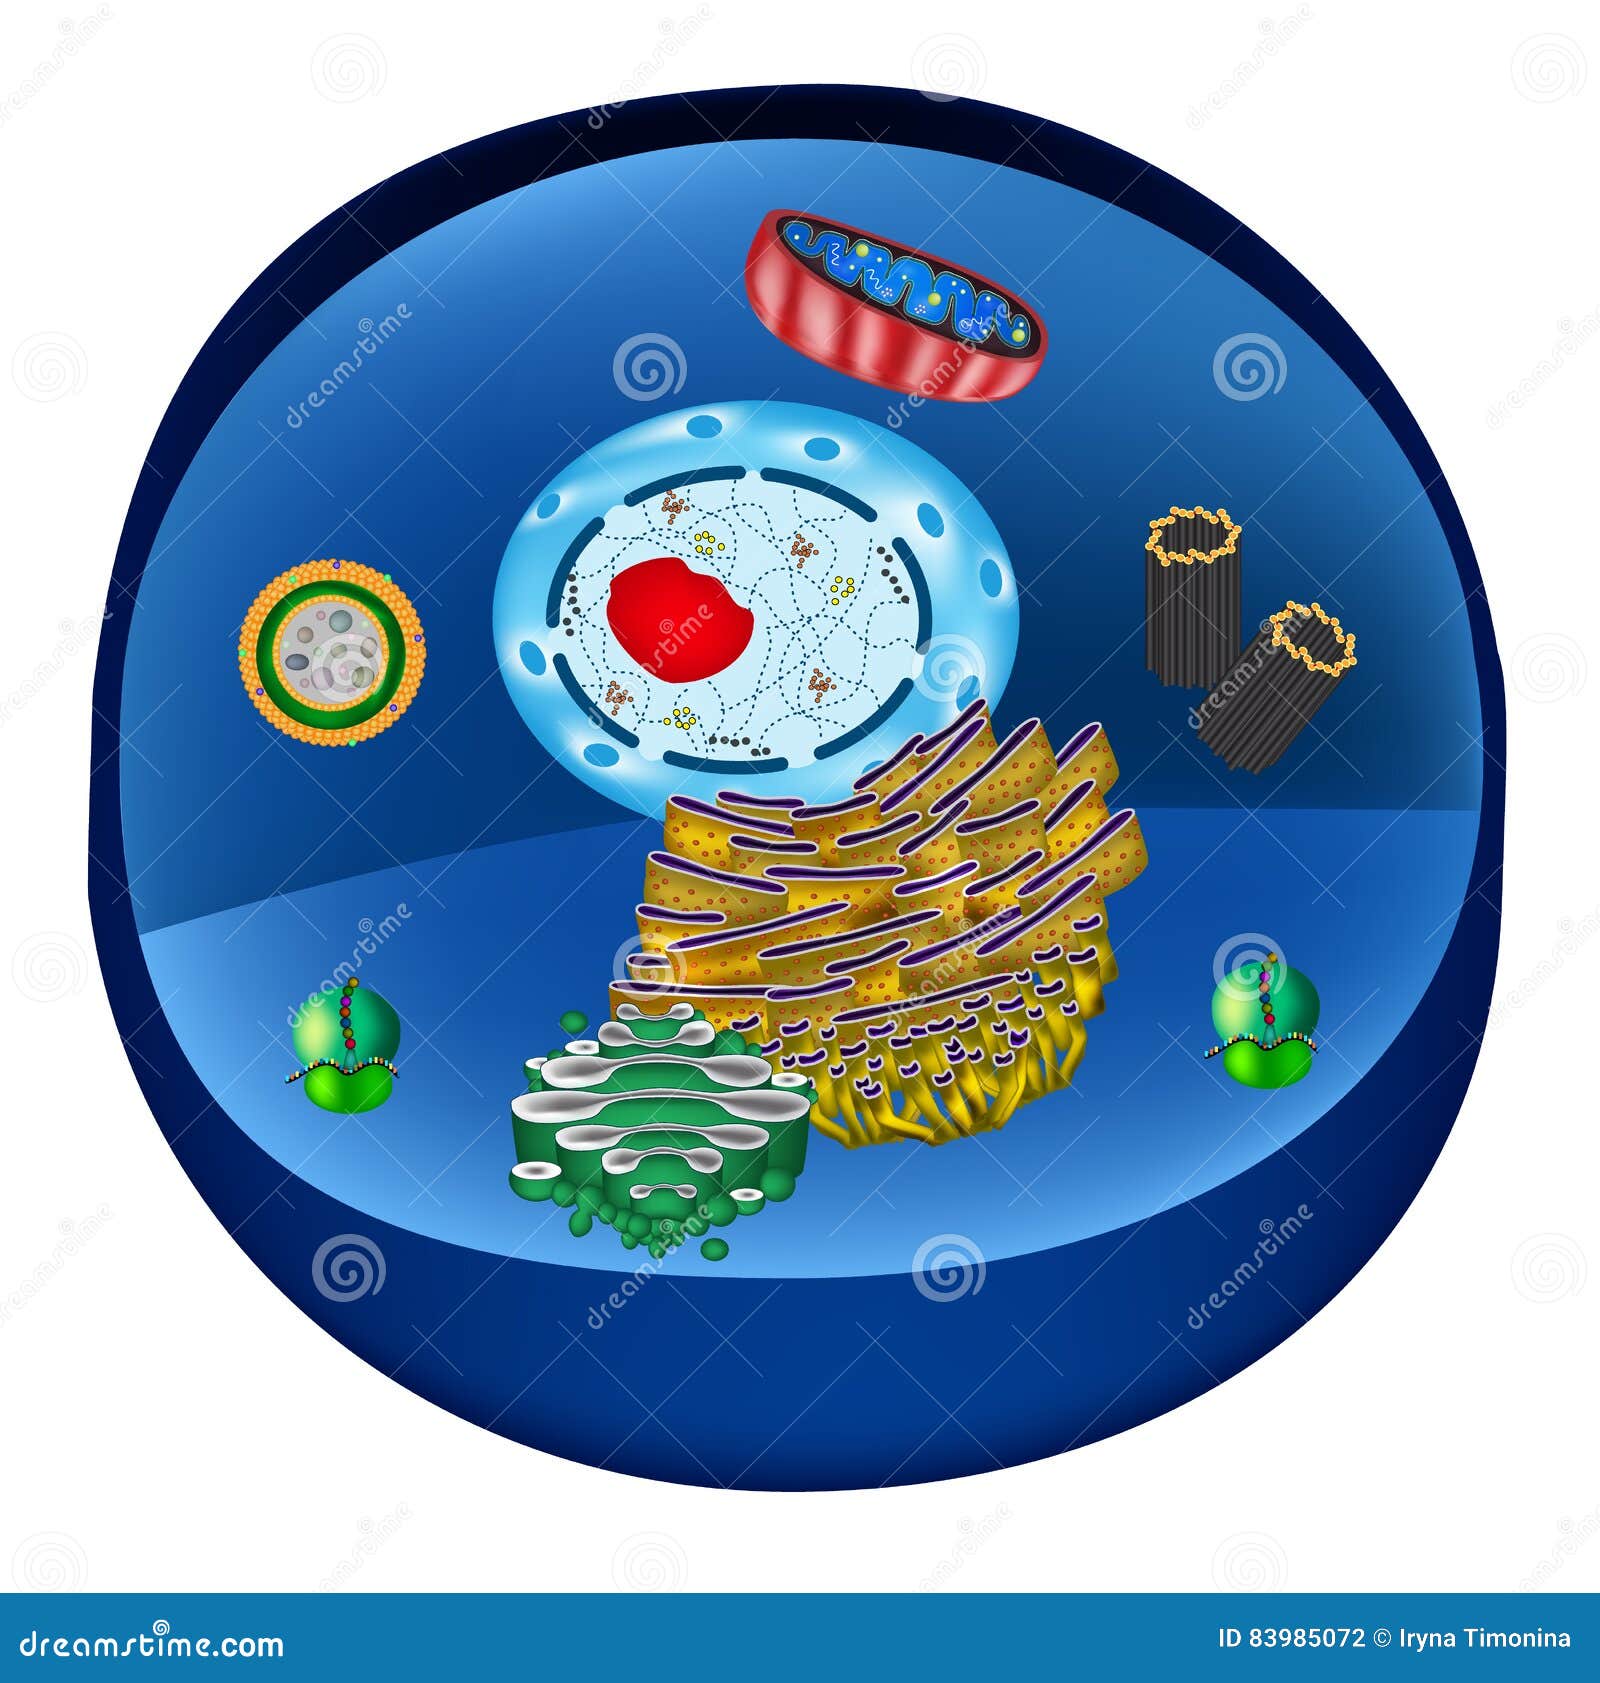 structure of human cells. organelles. the core nucleus, endoplasmic reticulum, golgi